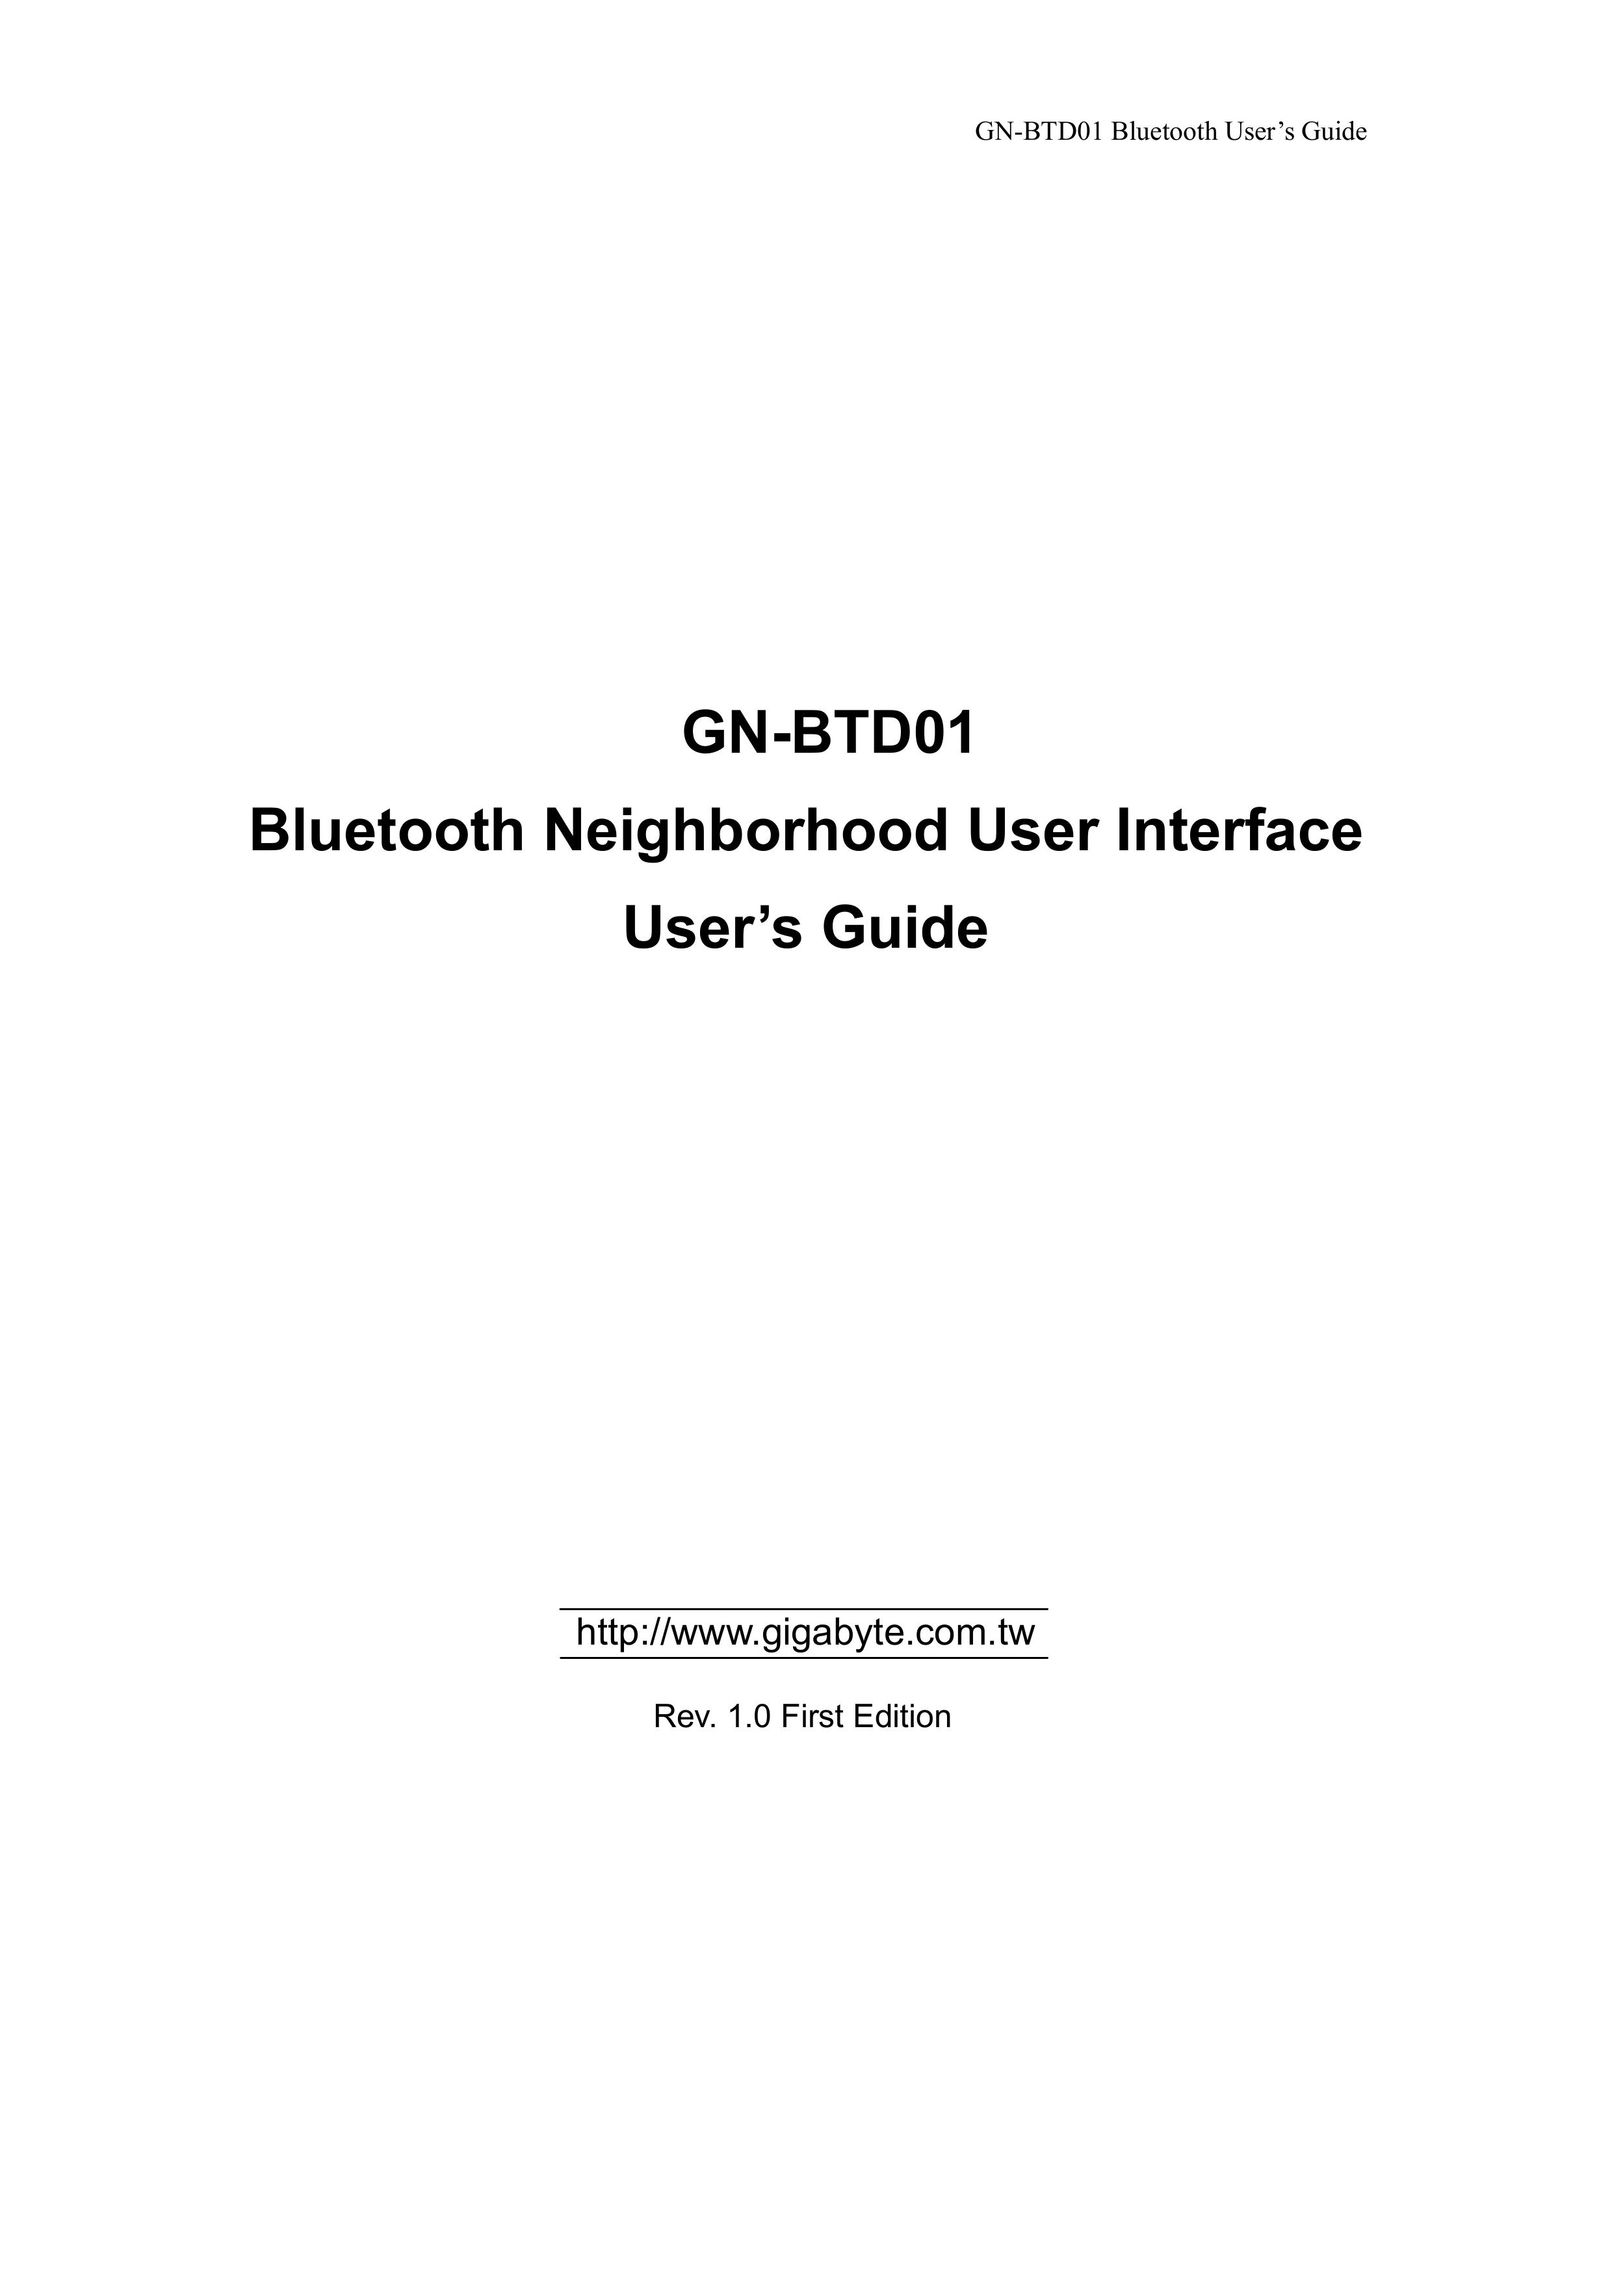 Gigabyte GN-BTD01 Network Card User Manual